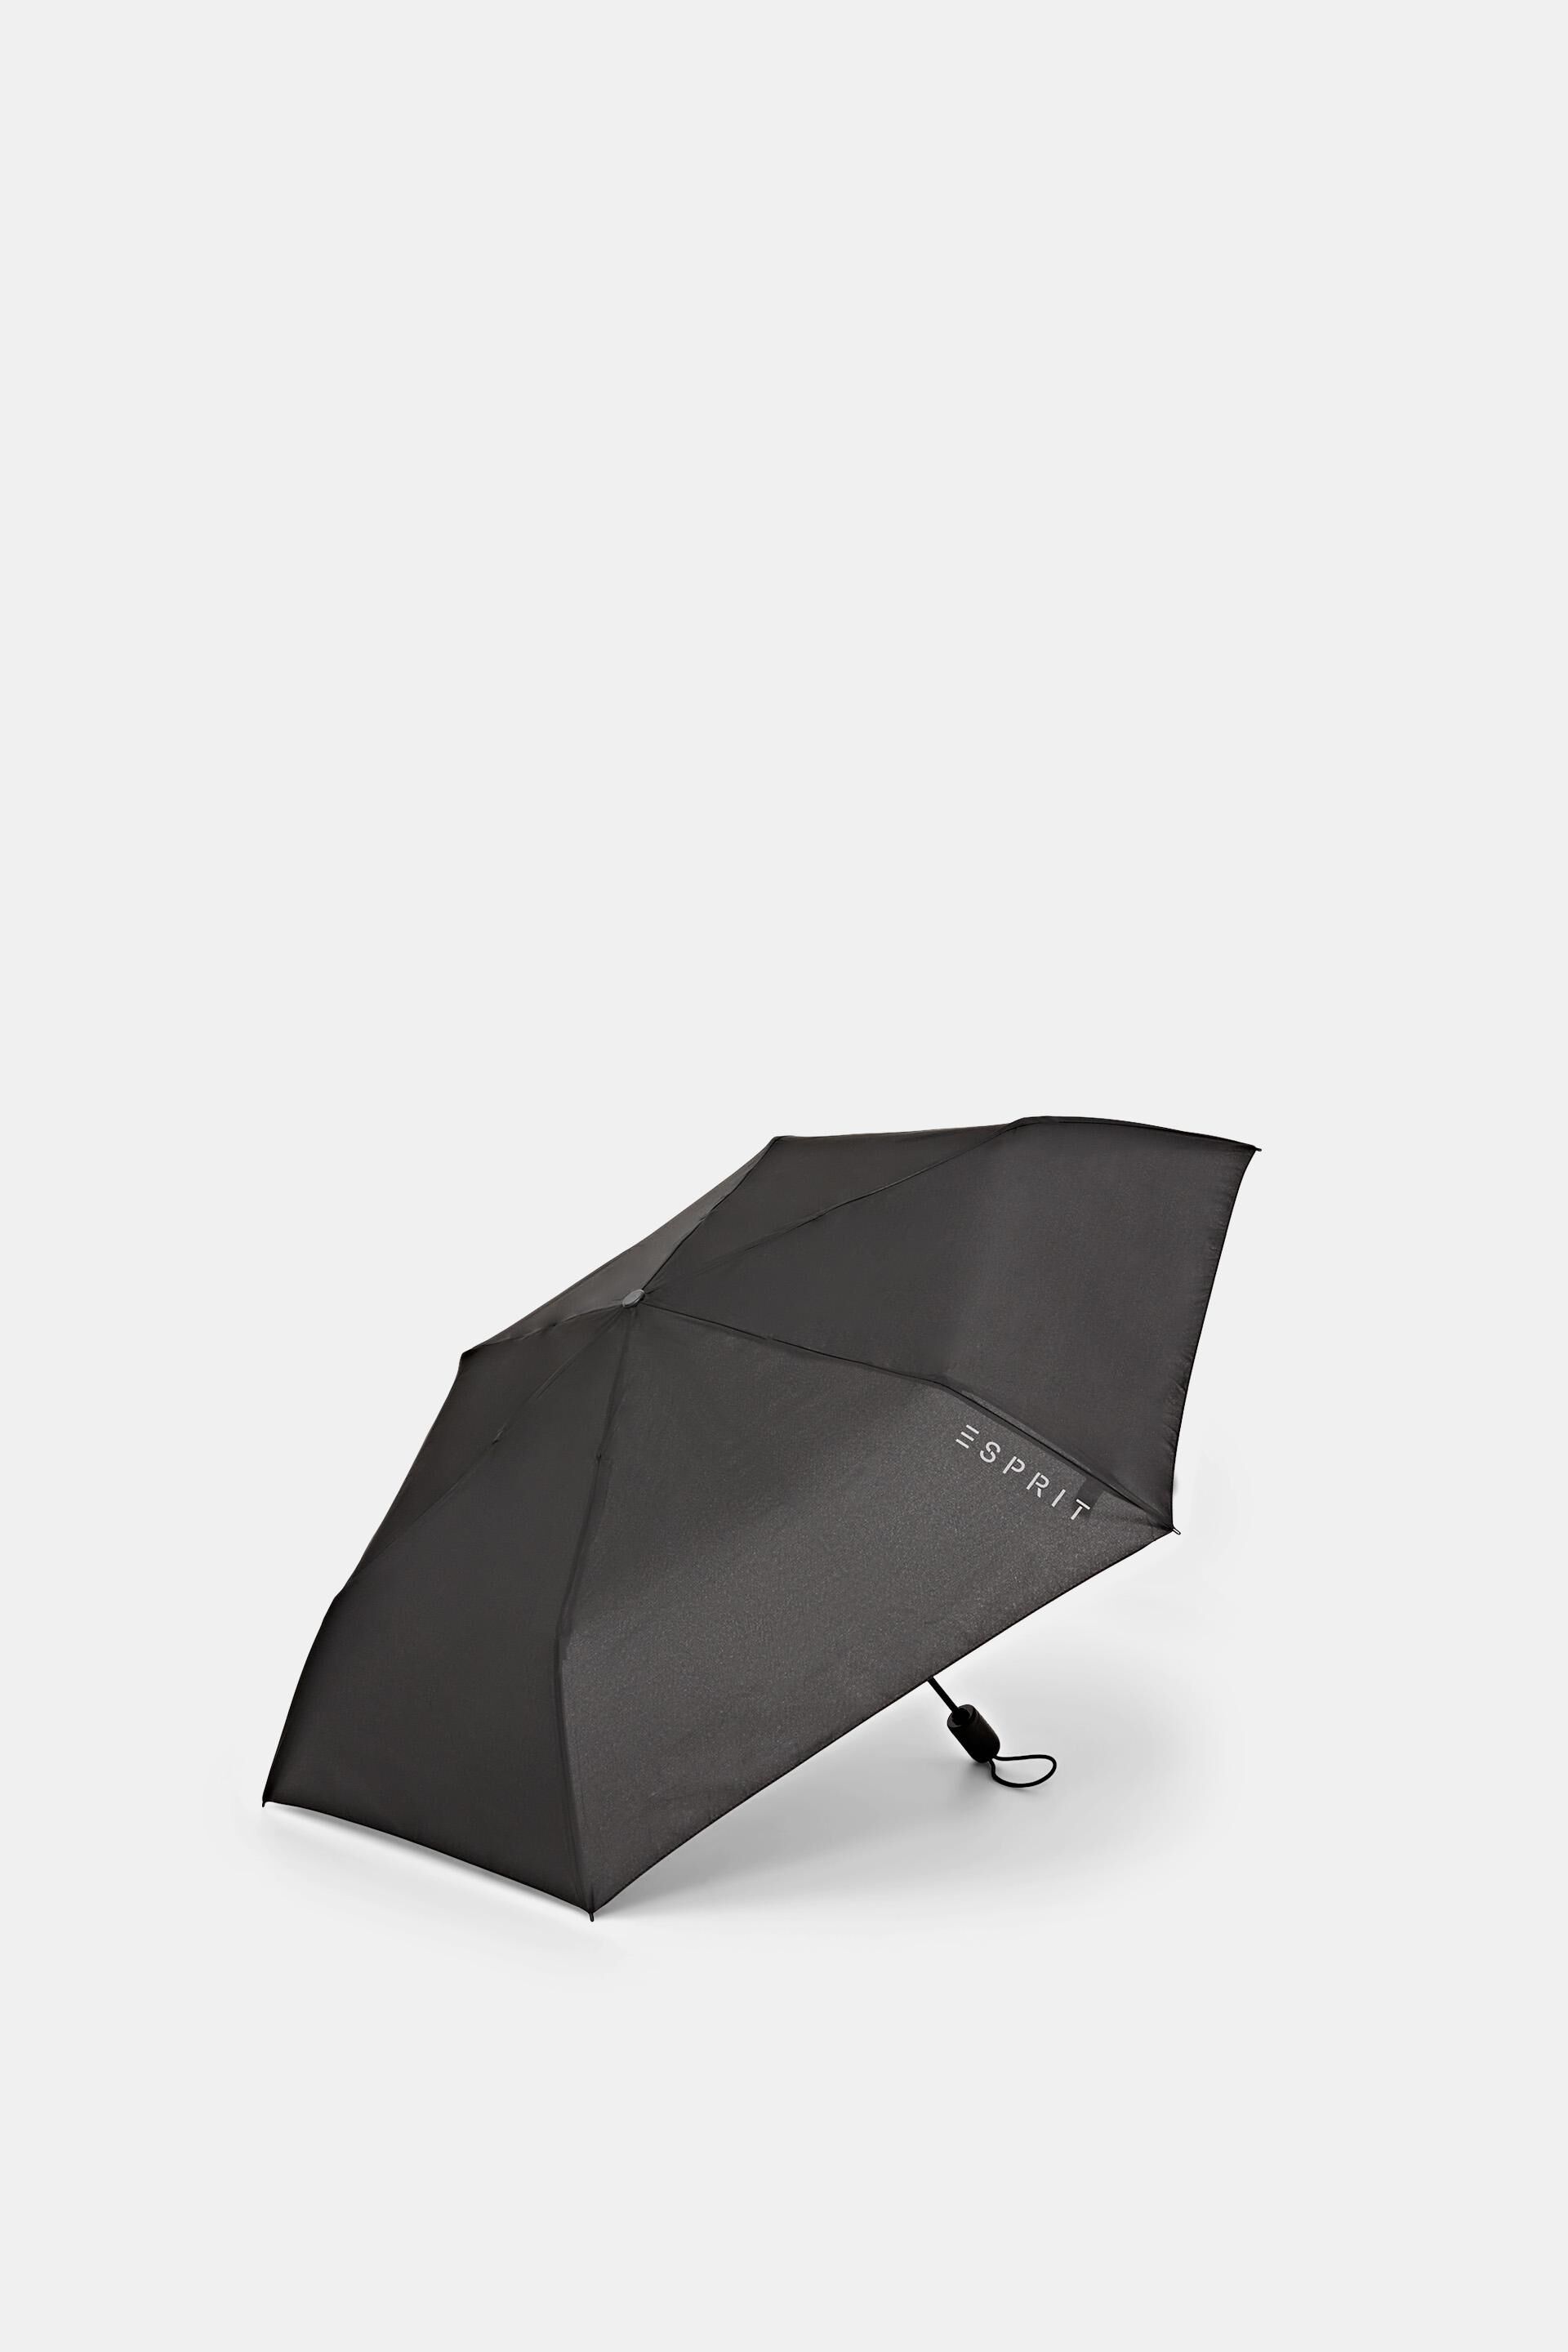 Violet MYSTICAL - 52467 Esprit Easymatic 3 Parapluie de poche 